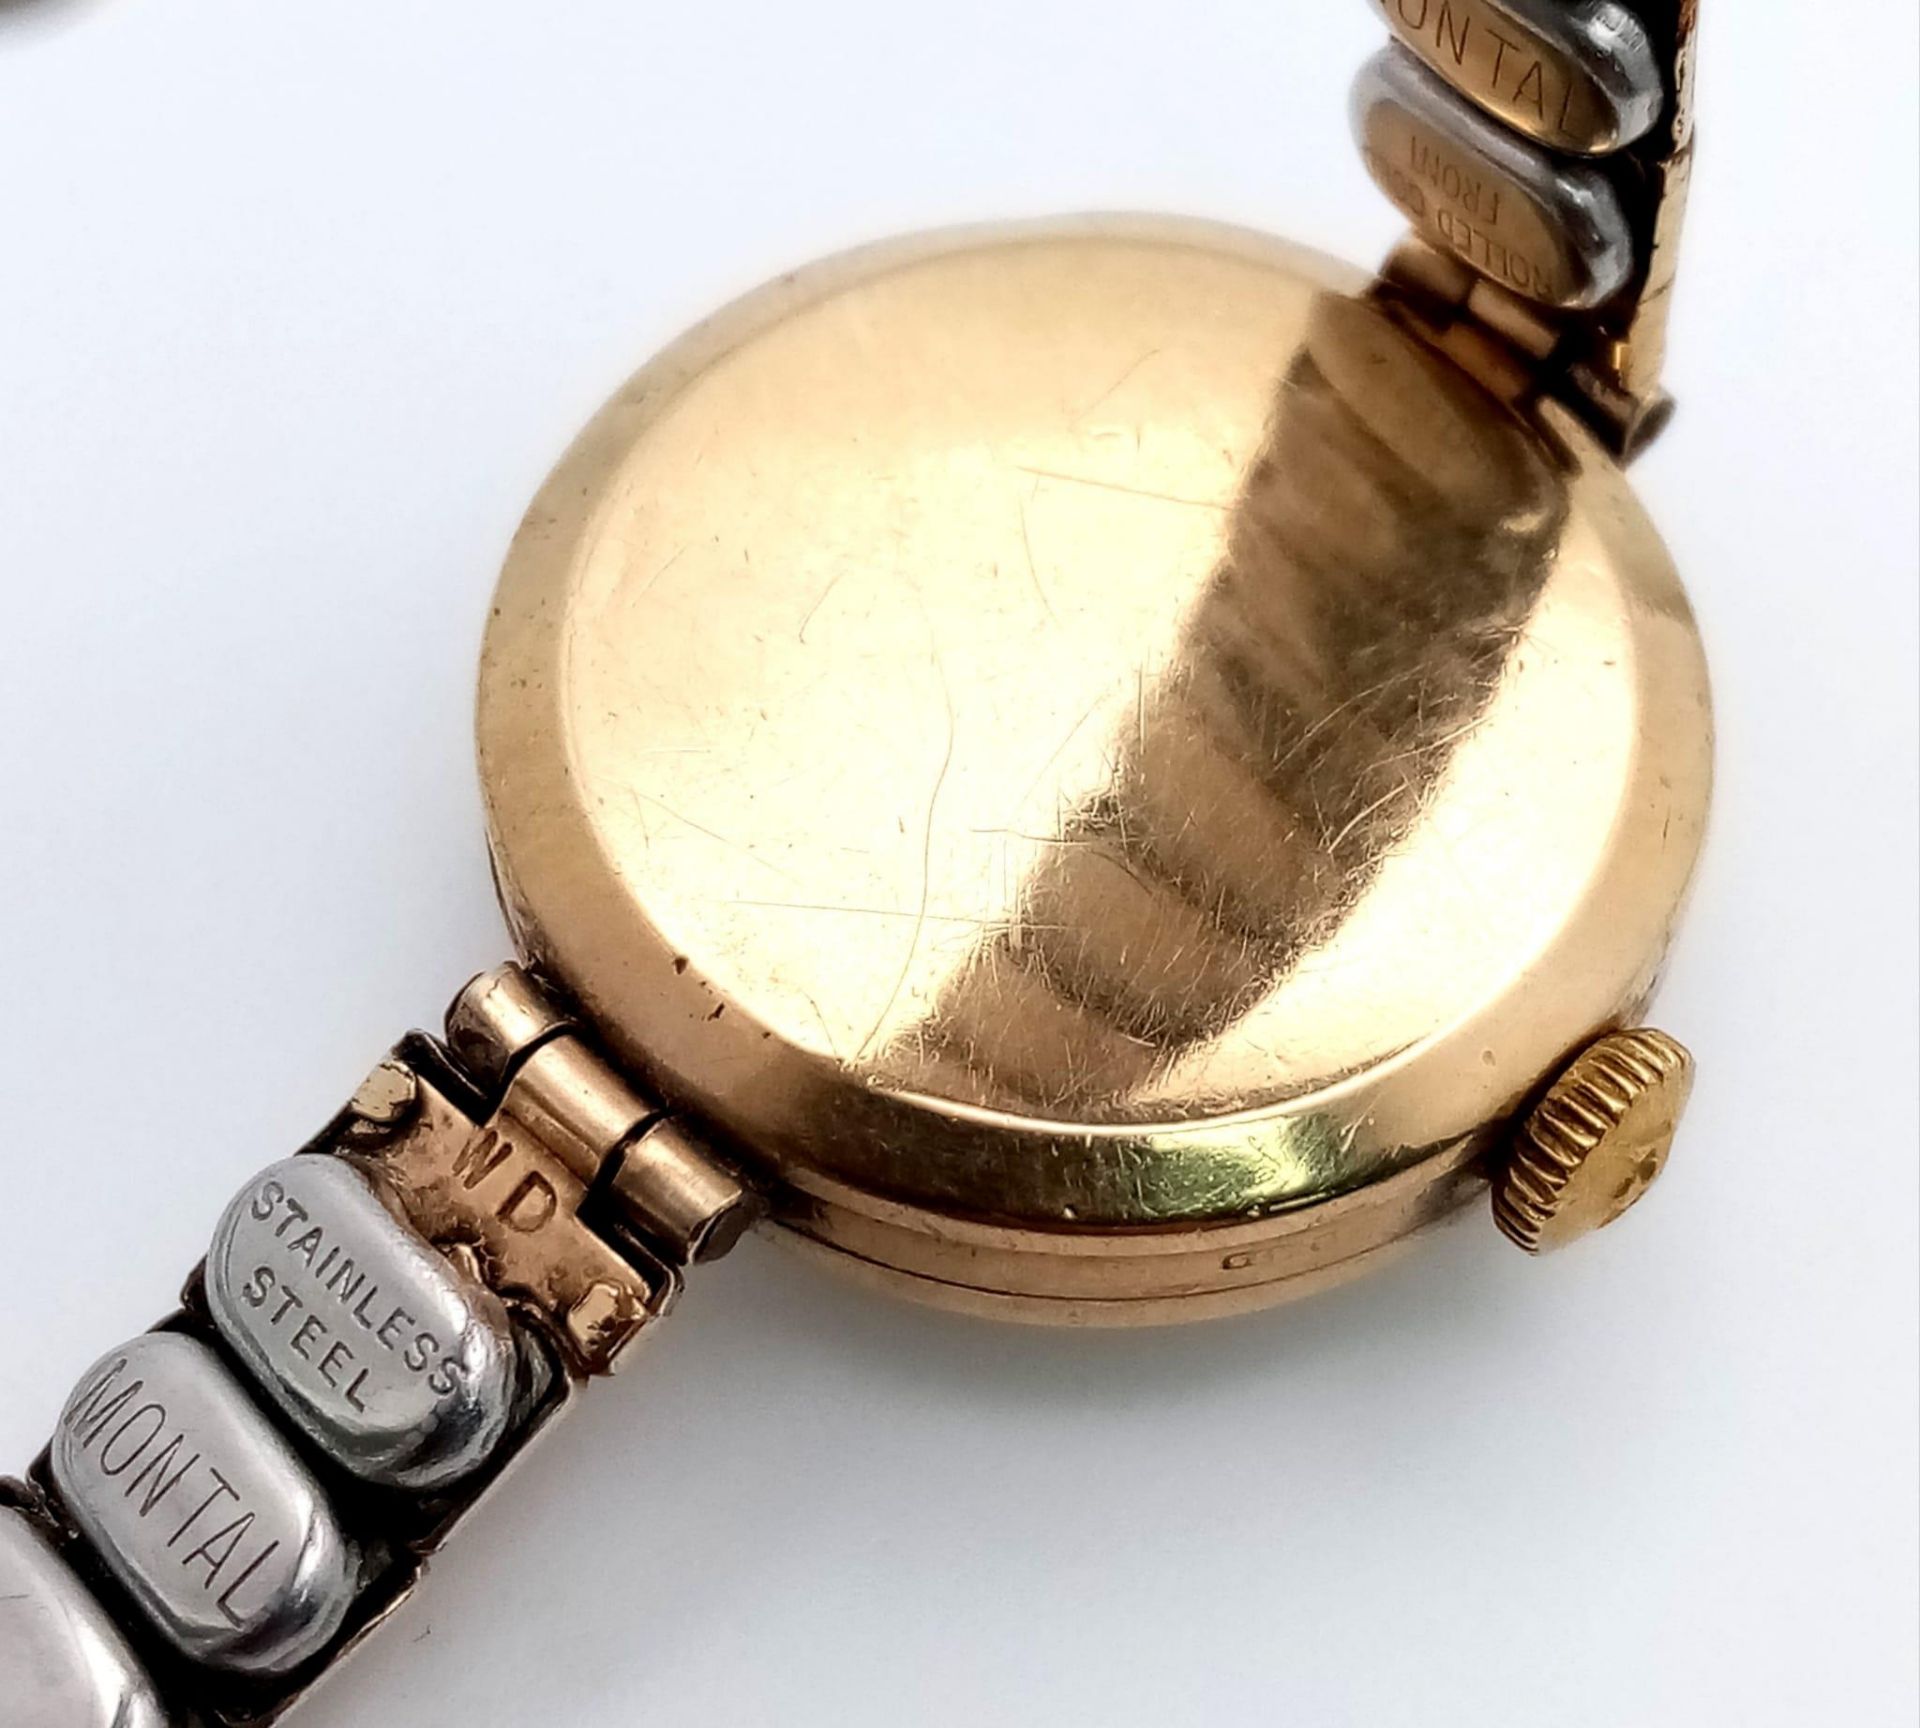 A Vintage 9K Gold Cased Marvin Ladies Watch. Expandable gilded bracelet. 9K gold case - 21mm. - Image 5 of 5